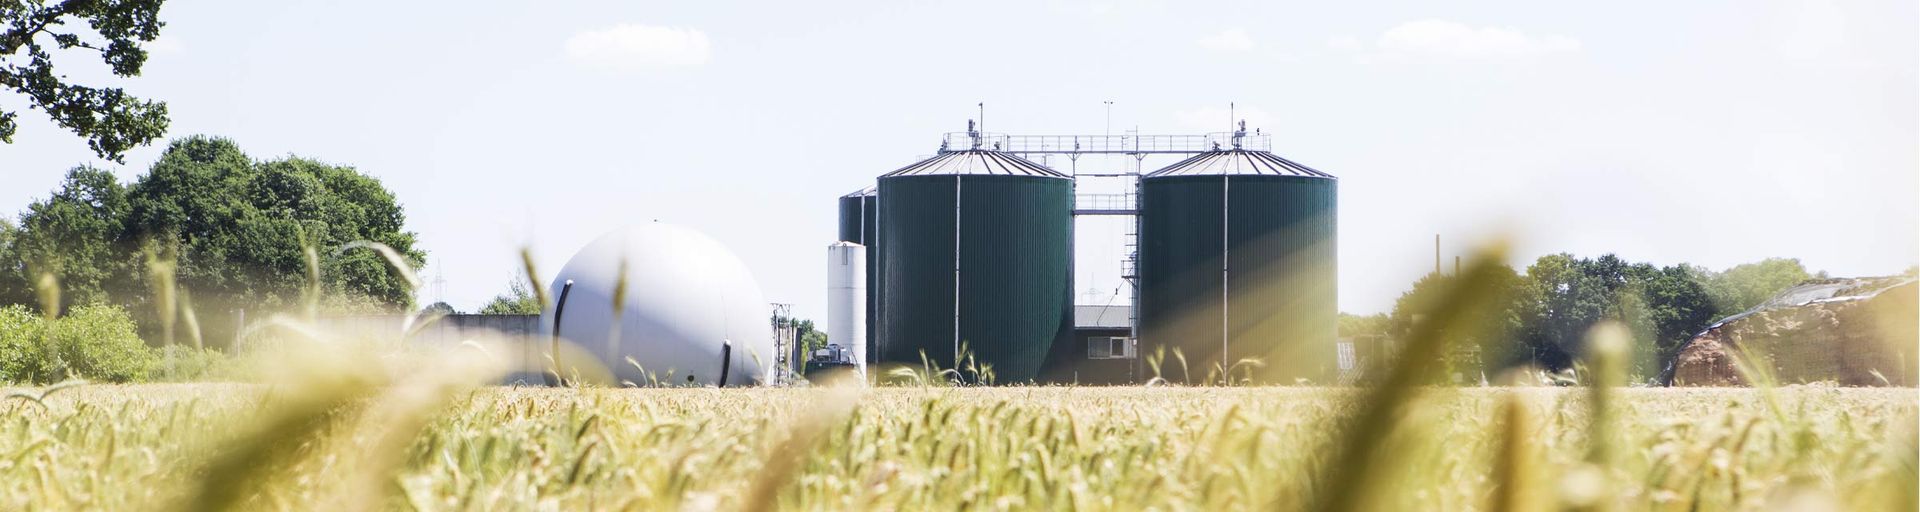 Biogas plant of Energielandwerker a customer of Next Kraftwerke.